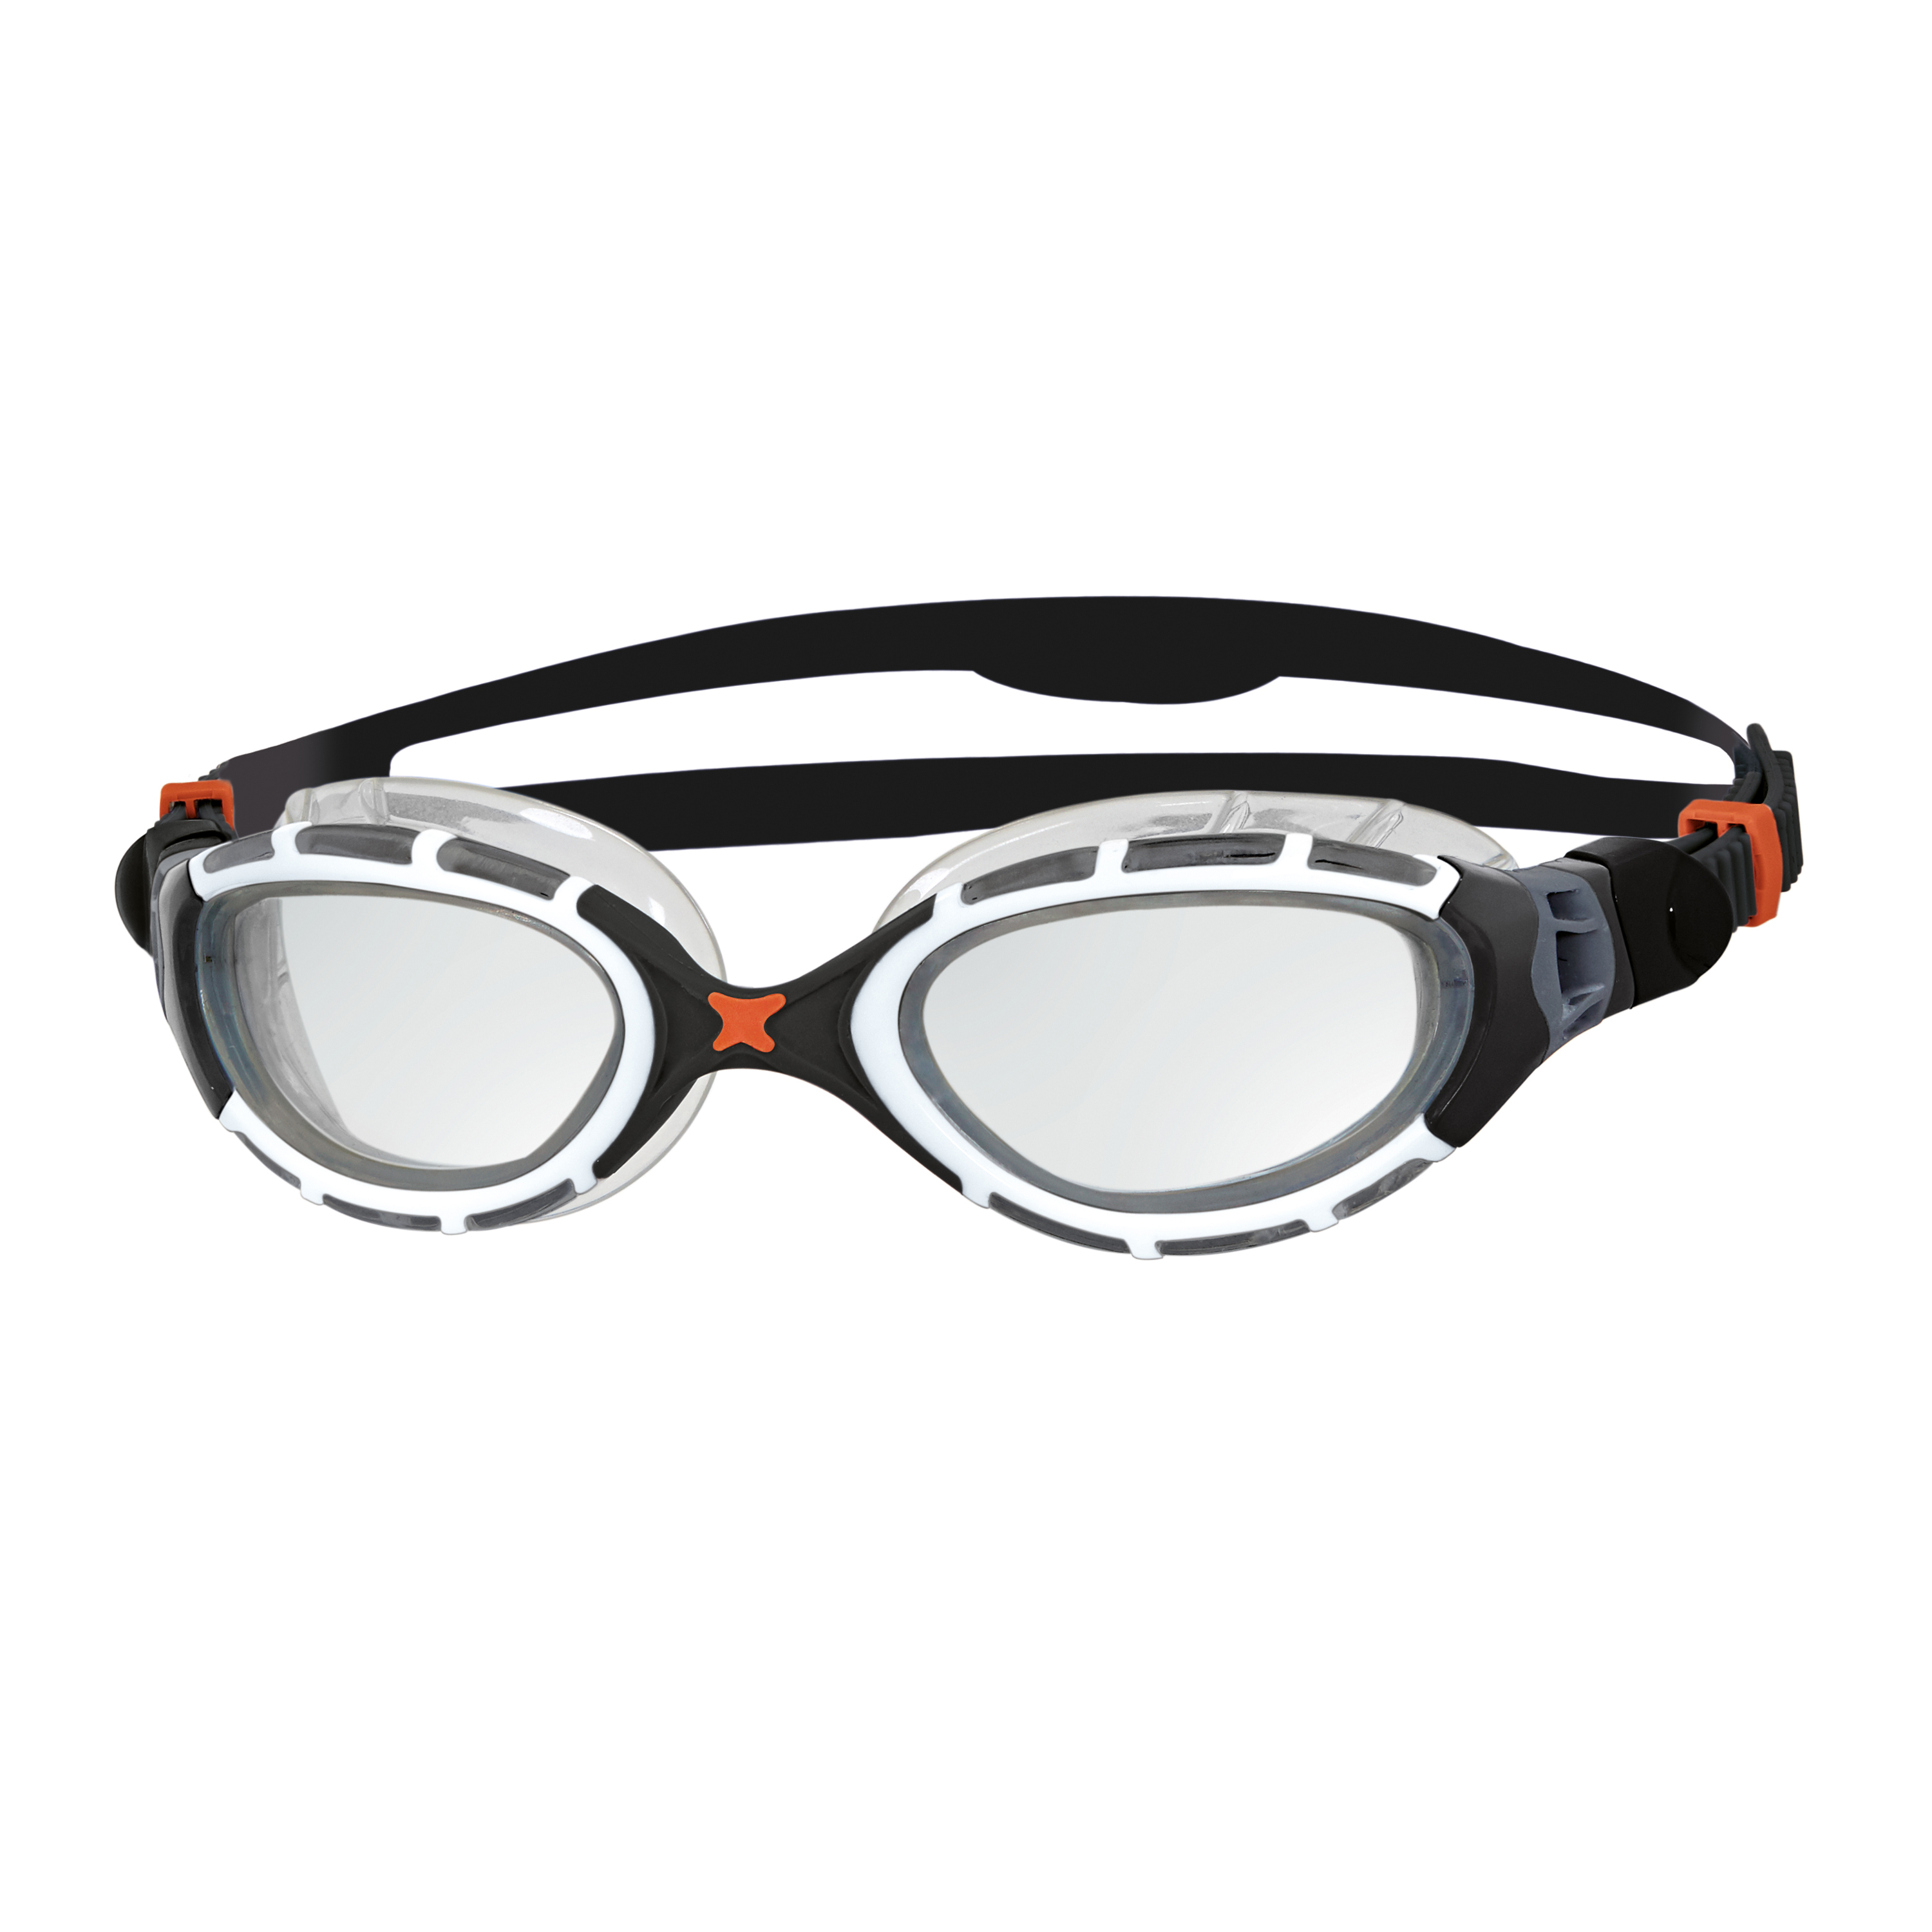 Zoggs PREDATOR - Gafas de natación clear grey/clear - Private Sport Shop